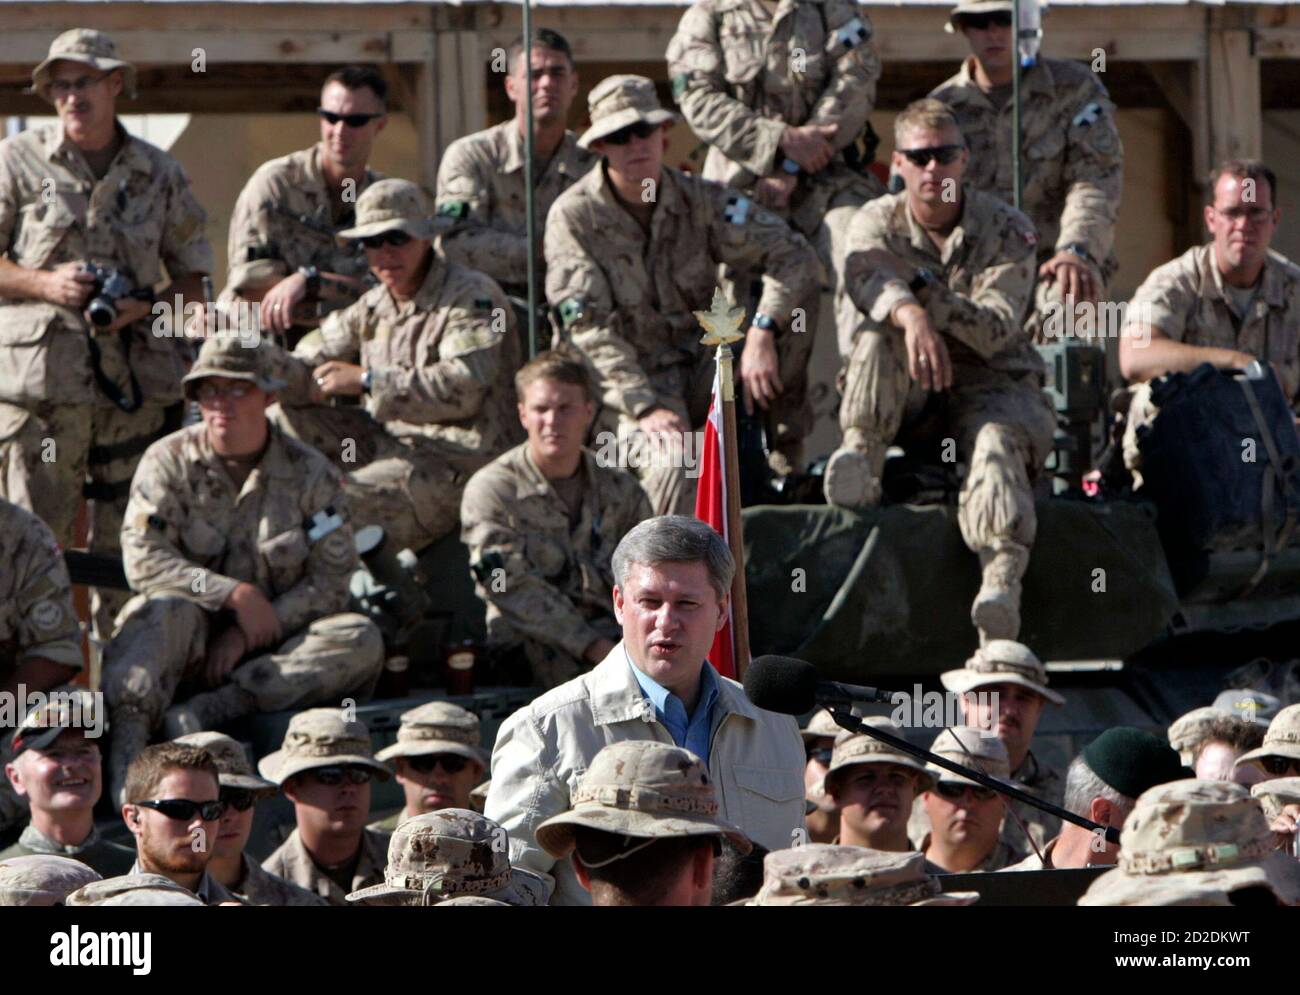 Kanadas Premierminister Stephen Harper (C) hält am 23. Mai 2007 eine Rede vor Mitgliedern der kanadischen Streitkräfte auf dem Flugplatz Kandahar. REUTERS/Chris Wattie (AFGHANISTAN) Stockfoto